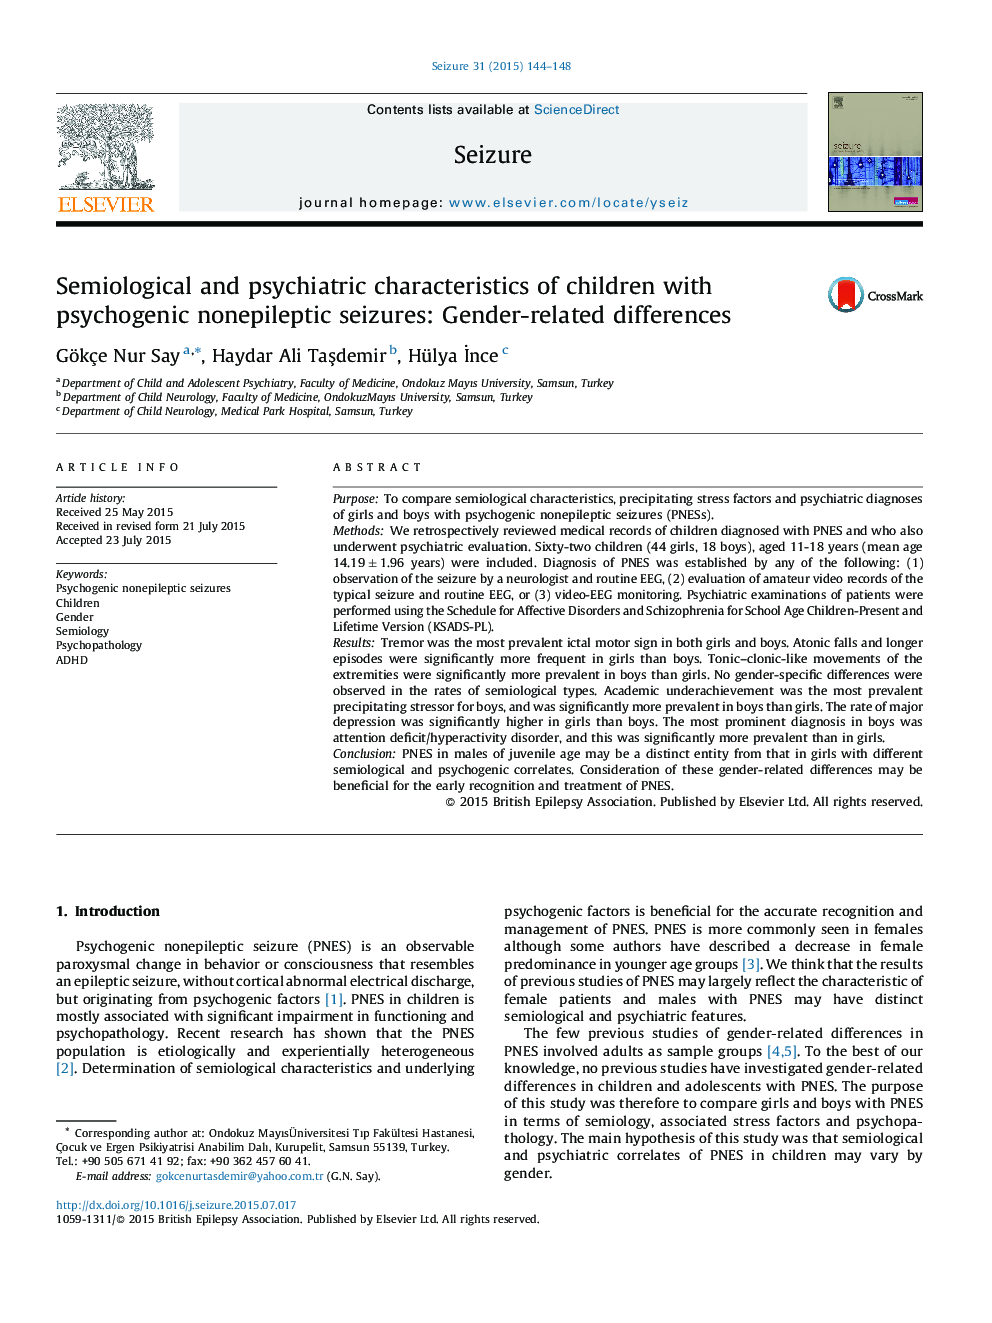 ویژگی های نیمه شناختی و روان شناختی کودکان مبتلا به تشنج ناخوشایندی روانی: تفاوت های جنسیتی 